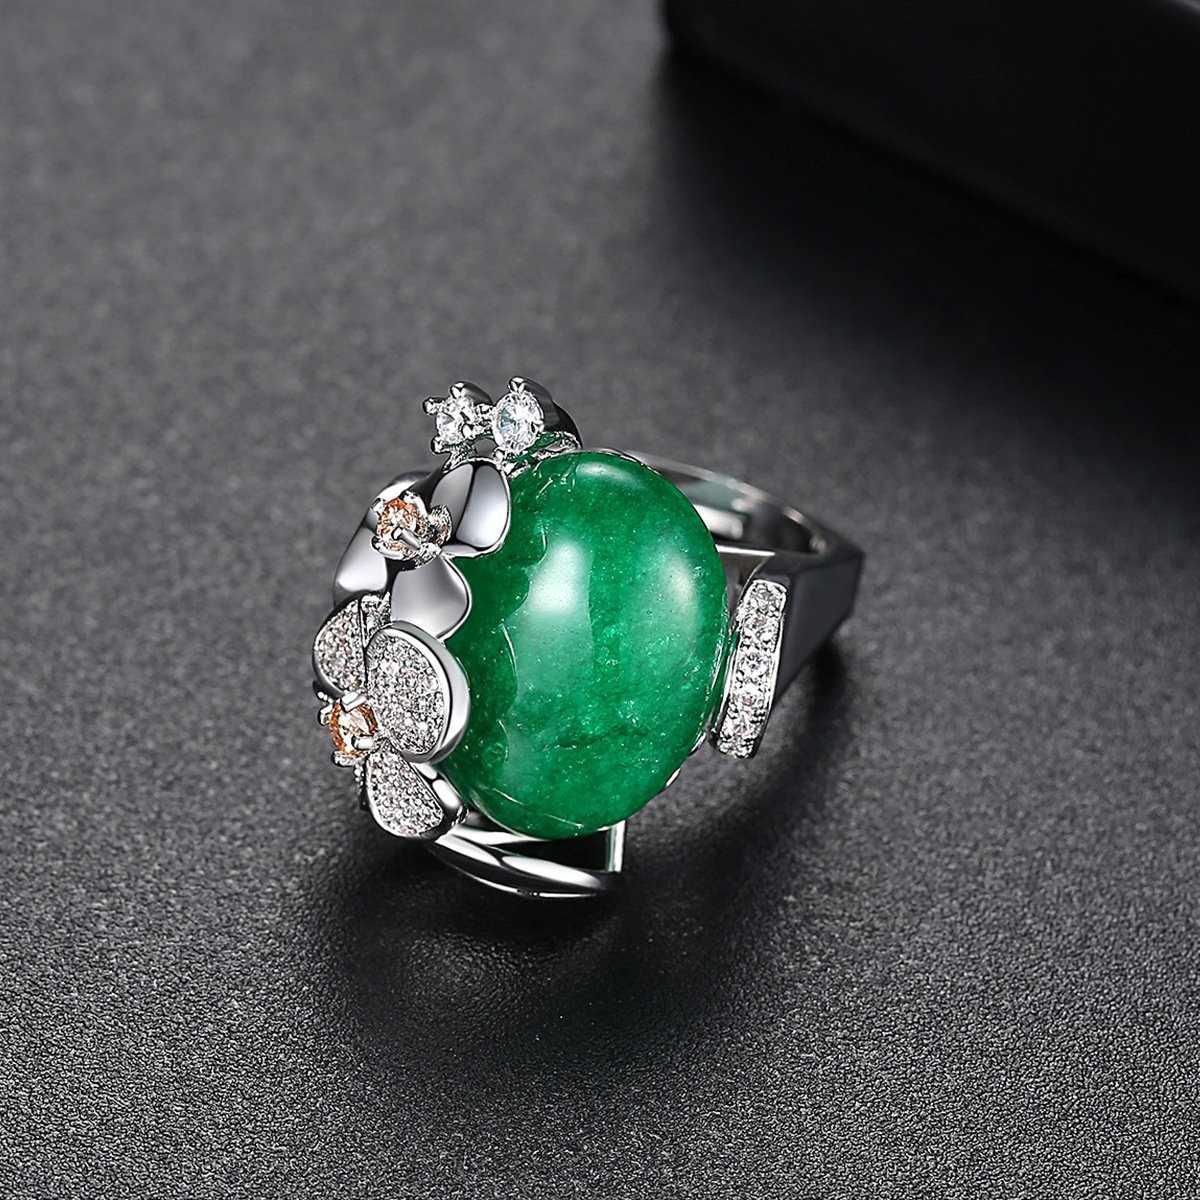 Vintage Green Gem Adjustable Ring - HER'S